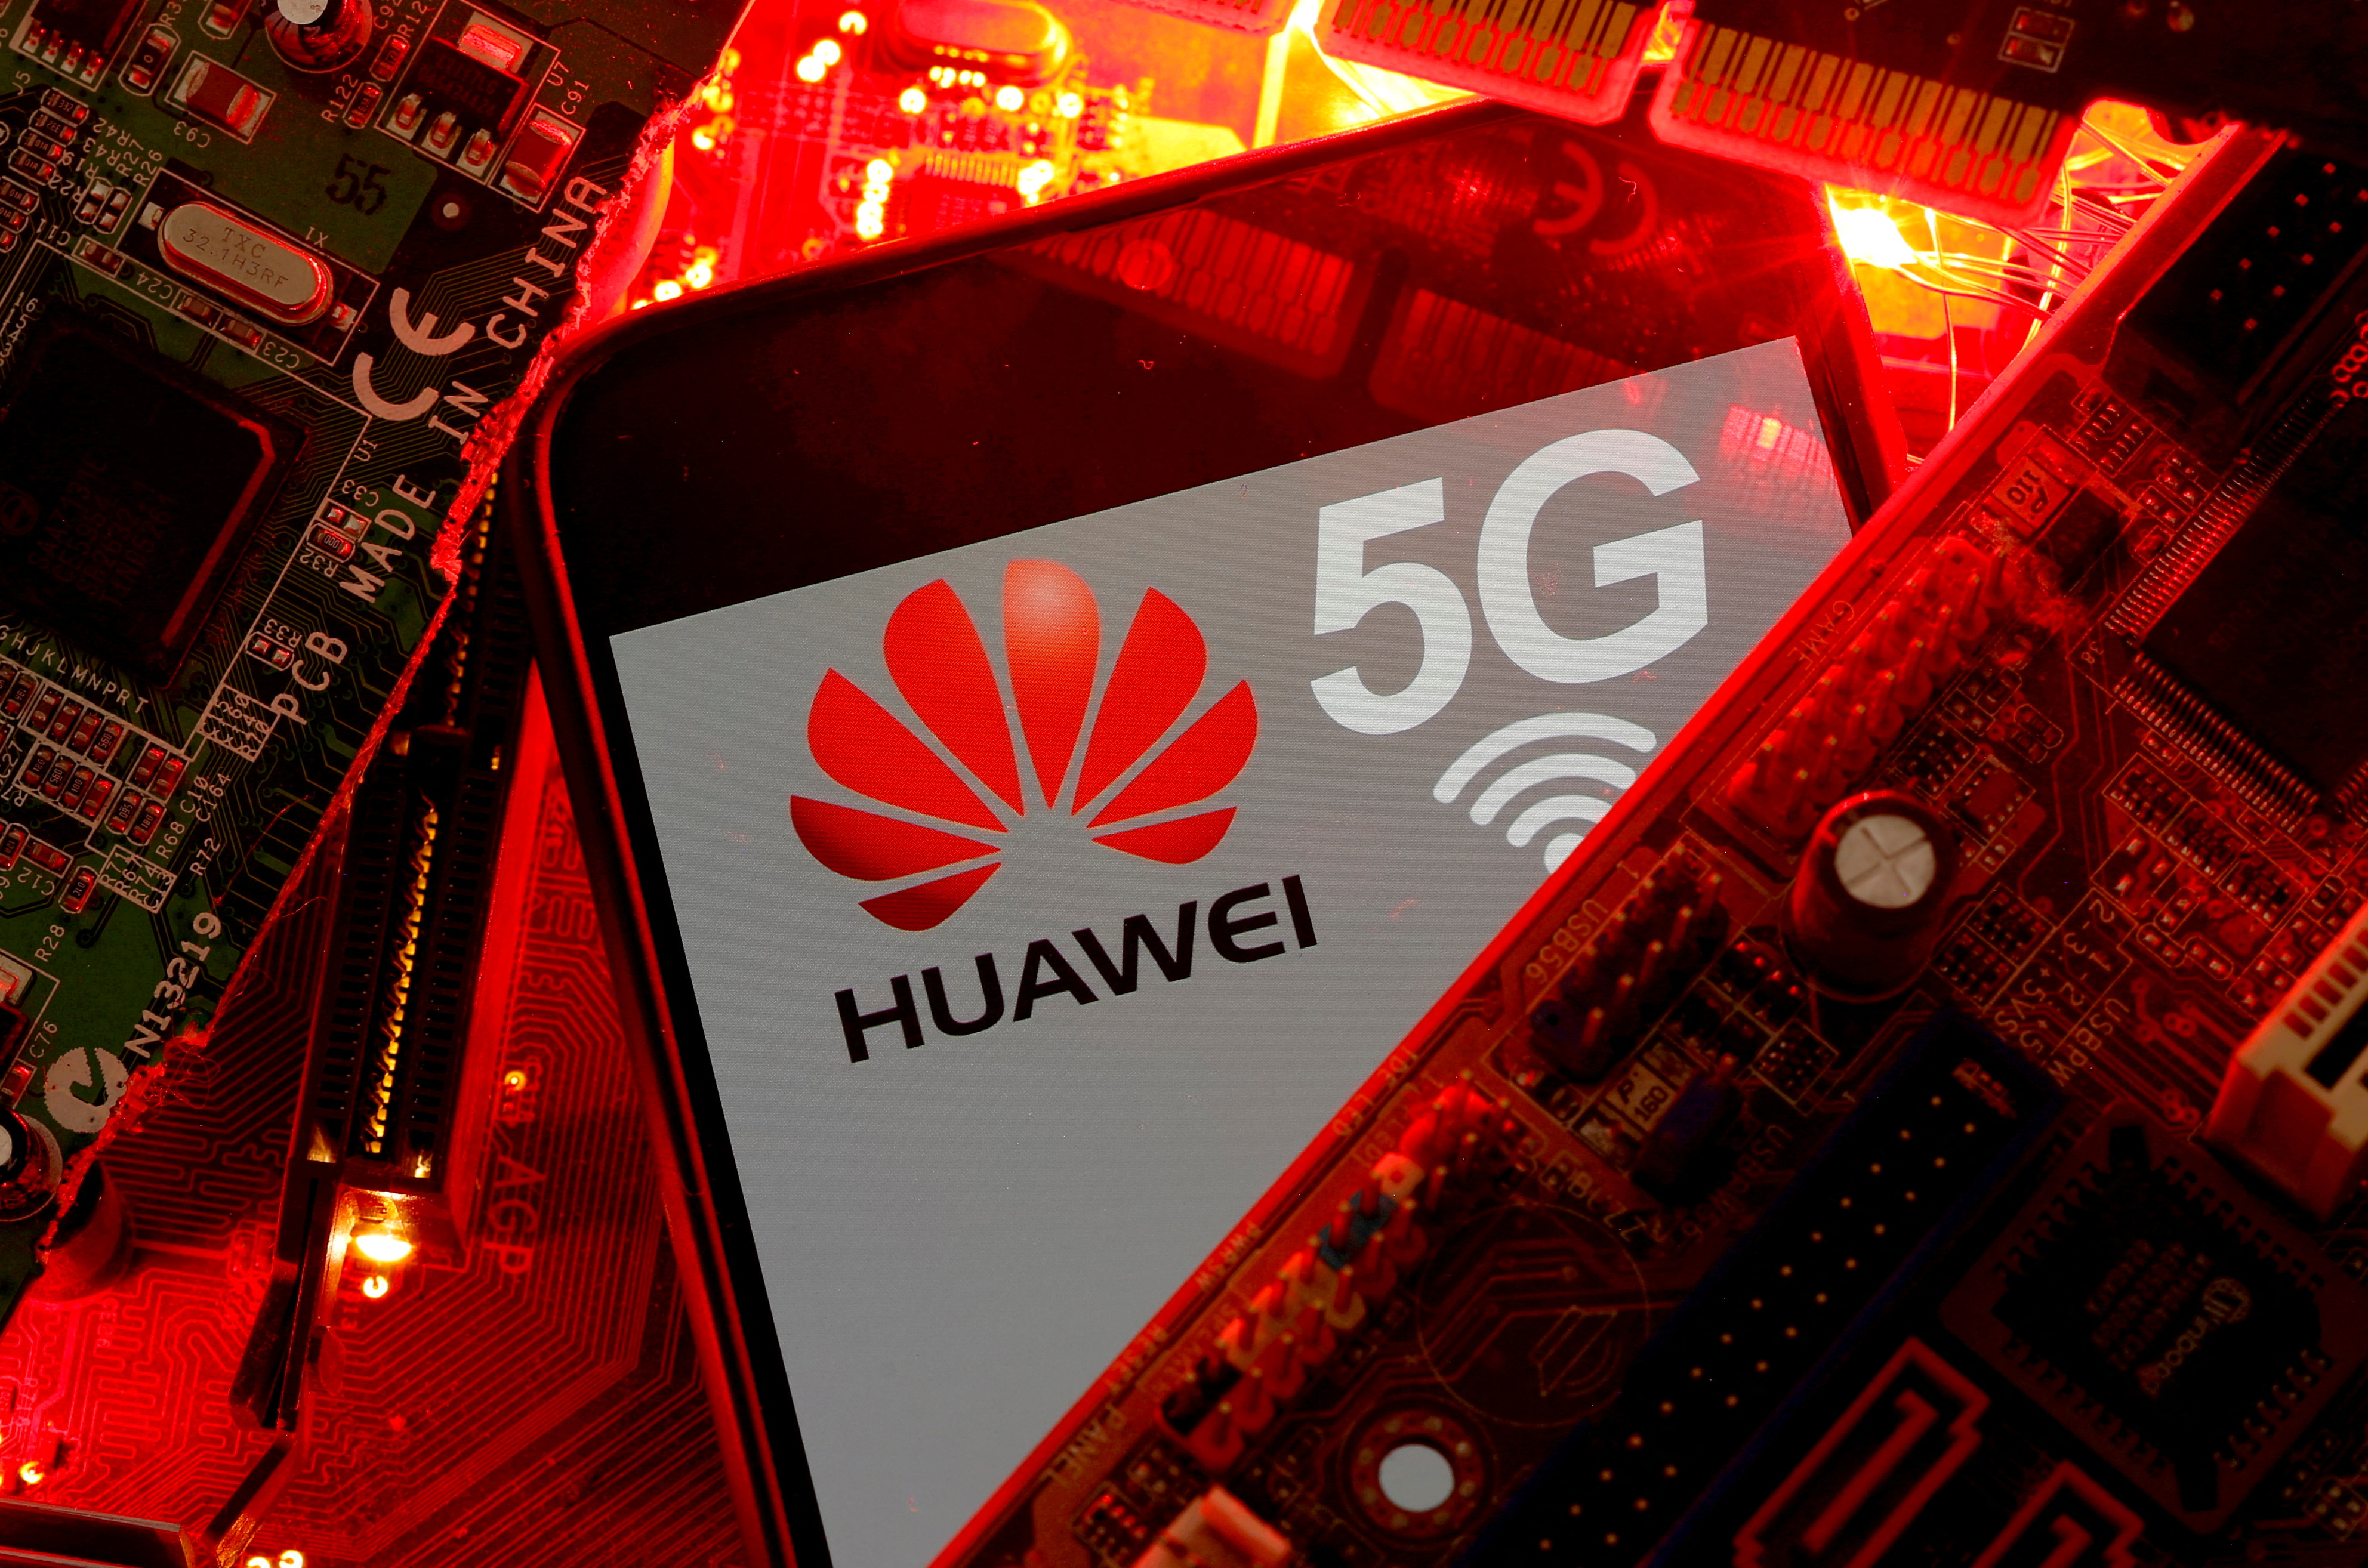 FOTO DE ARCHIVO: Un teléfono inteligente con el logotipo de Huawei y la red 5G se ve en la placa base de una PC en esta imagen ilustrativa tomada el 29 de enero de 2020. REUTERS/Dado Ruvic/File Photo